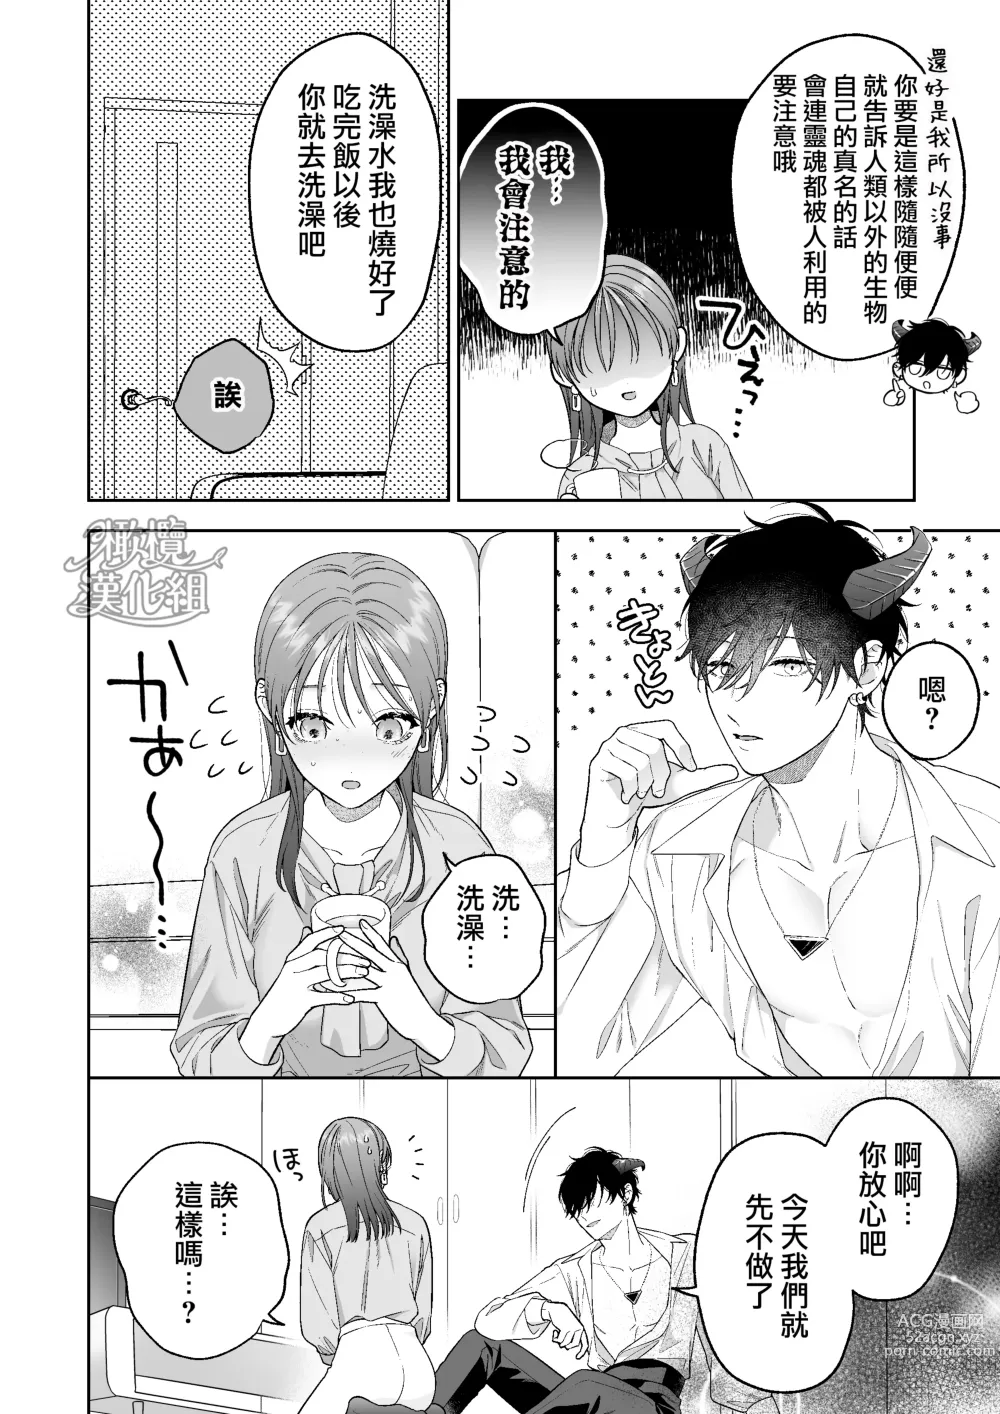 Page 14 of doujinshi 被一不小心召唤出来的爱照顾人的淫魔宠溺、然后被他溫柔的性爱攻陷了